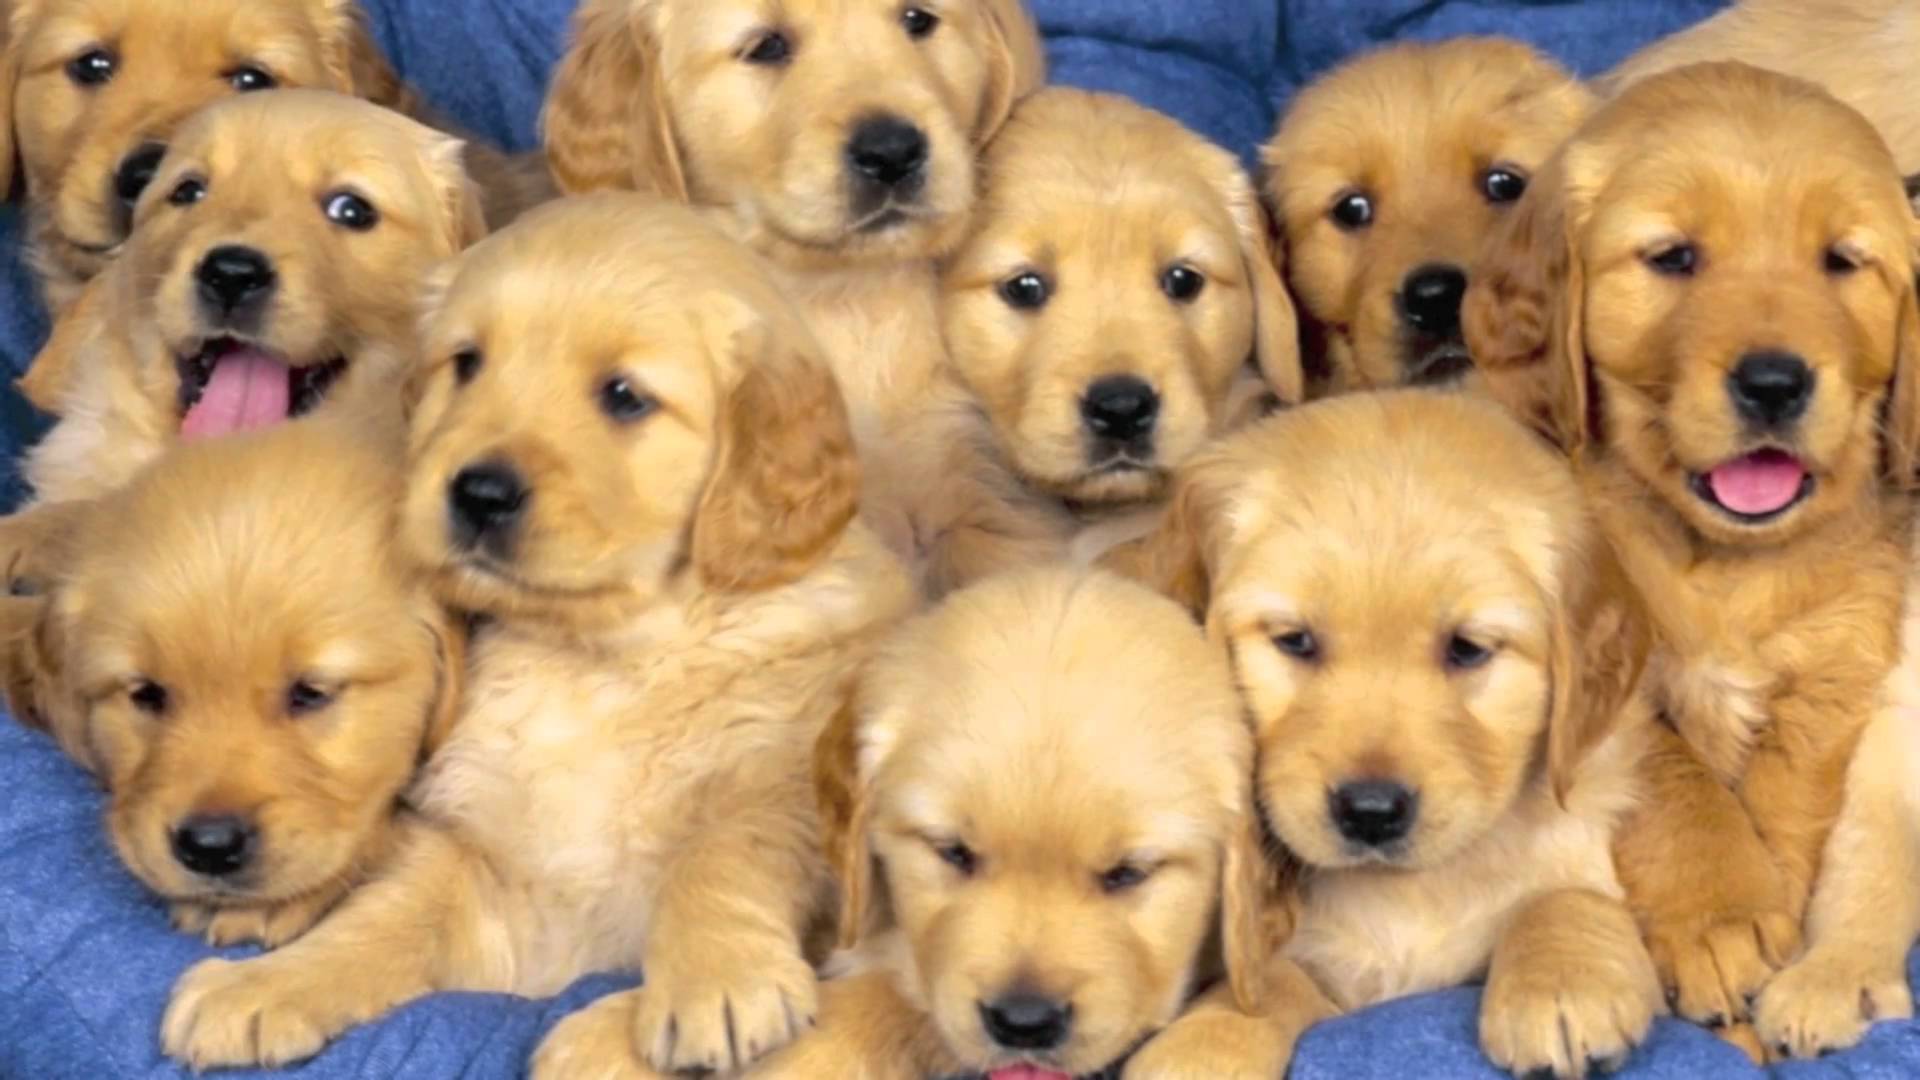 Traffico internazionale di cuccioli di cane: 8 ordinanze cautelari